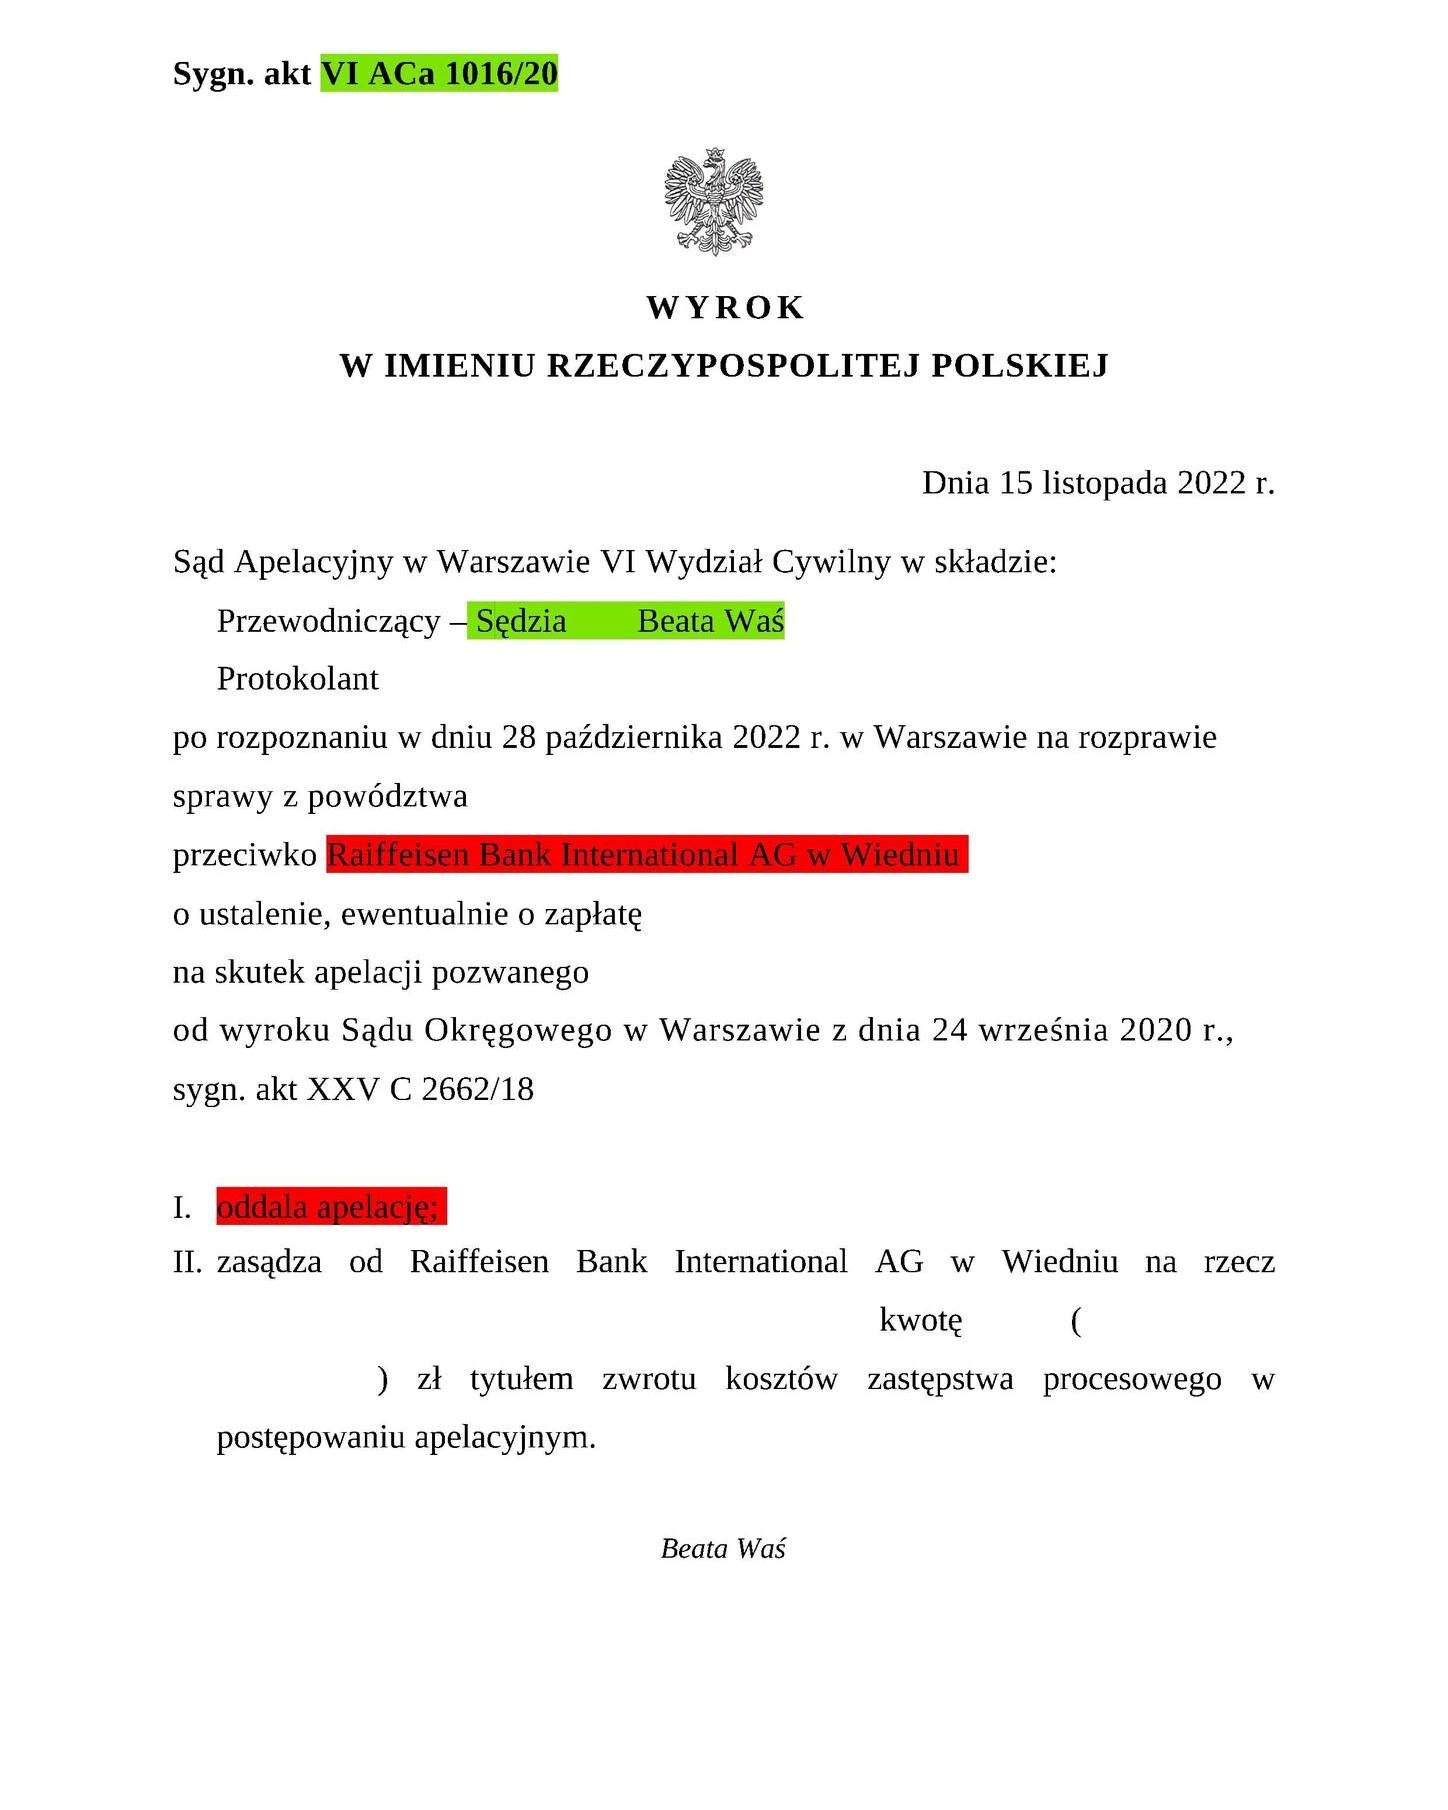 Wyrok Sądu Apelacyjnego w Warszawie z dnia 15.11.2022 r., sygn. akt VI ACa 1016/20 Przegrana Raiffeisen Bank International AG